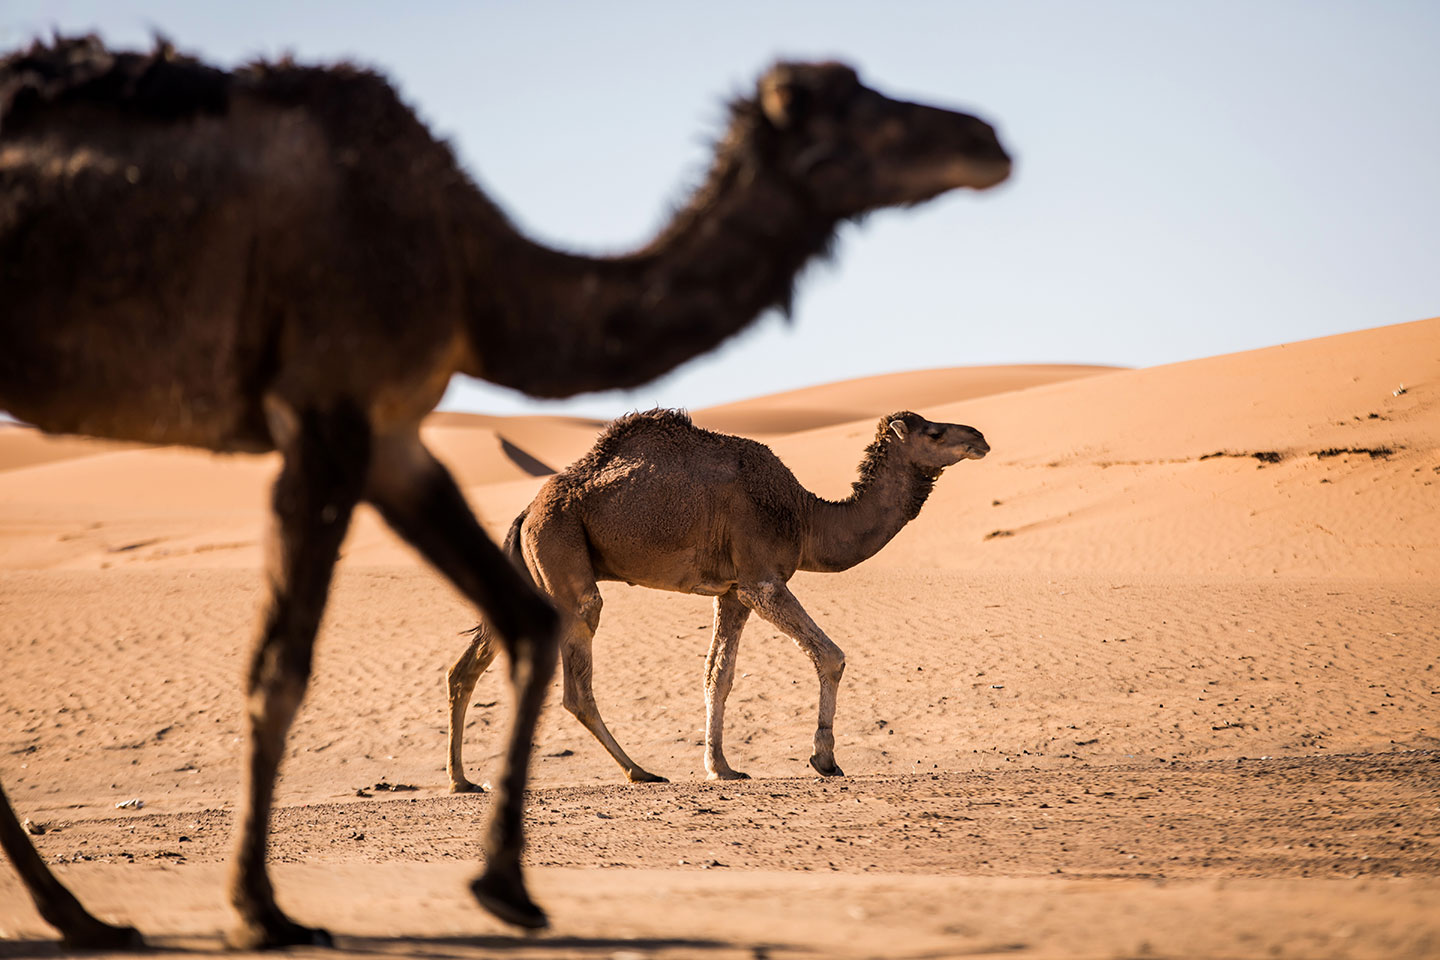 Wild camels near Zagora in the Sahara desert, Morocco